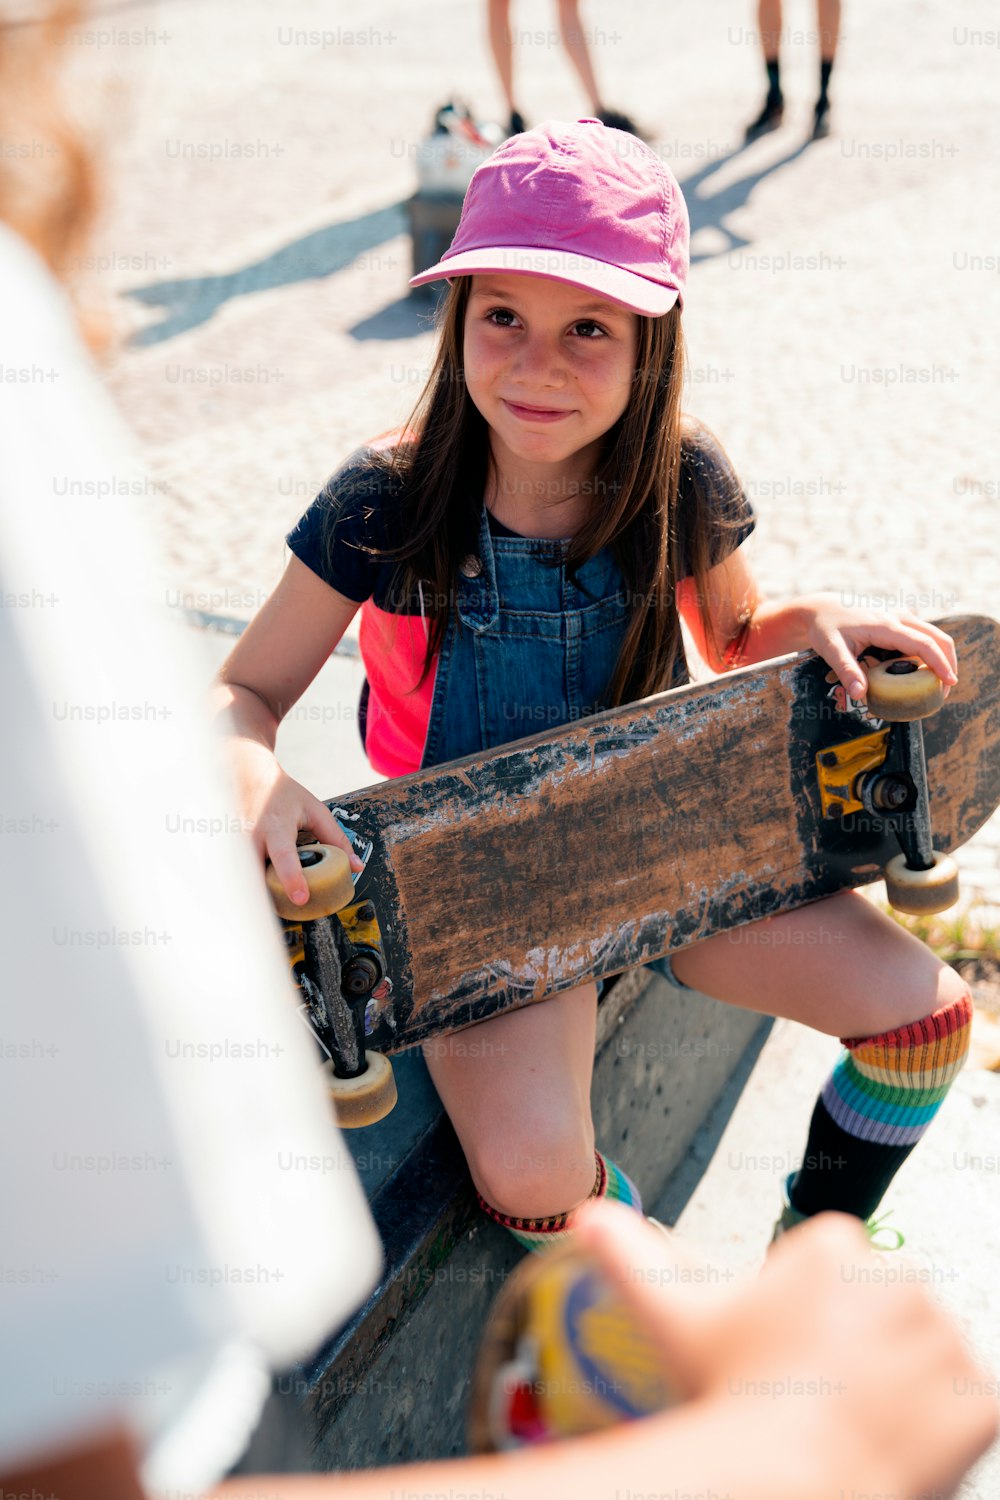 una joven sentada en un banco sosteniendo una patineta